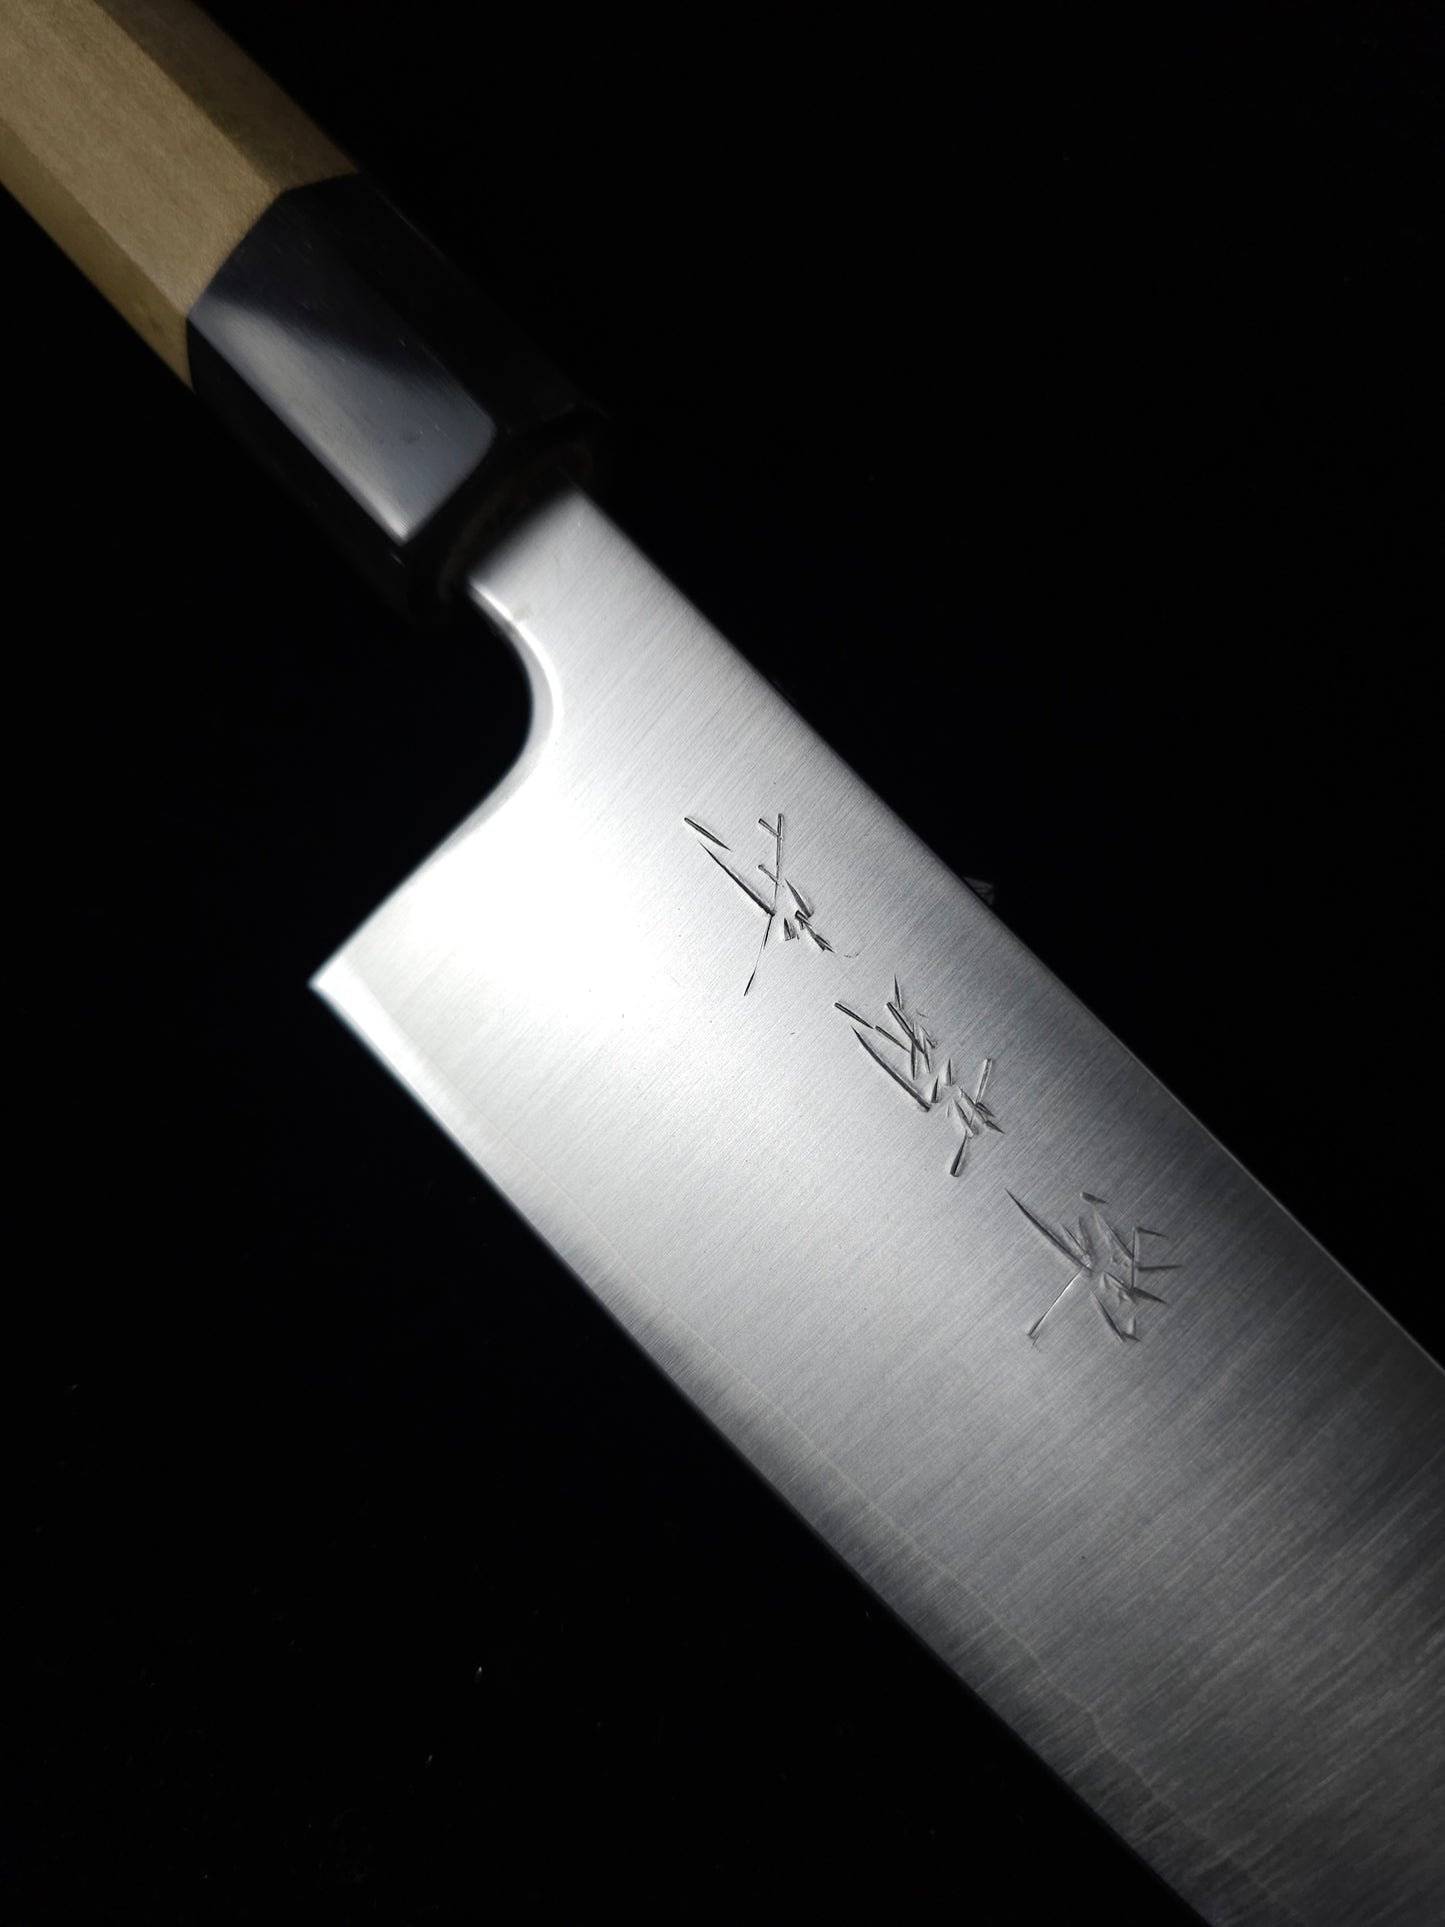 Sakai Kikumori R2 Gyuto Knife 240mm